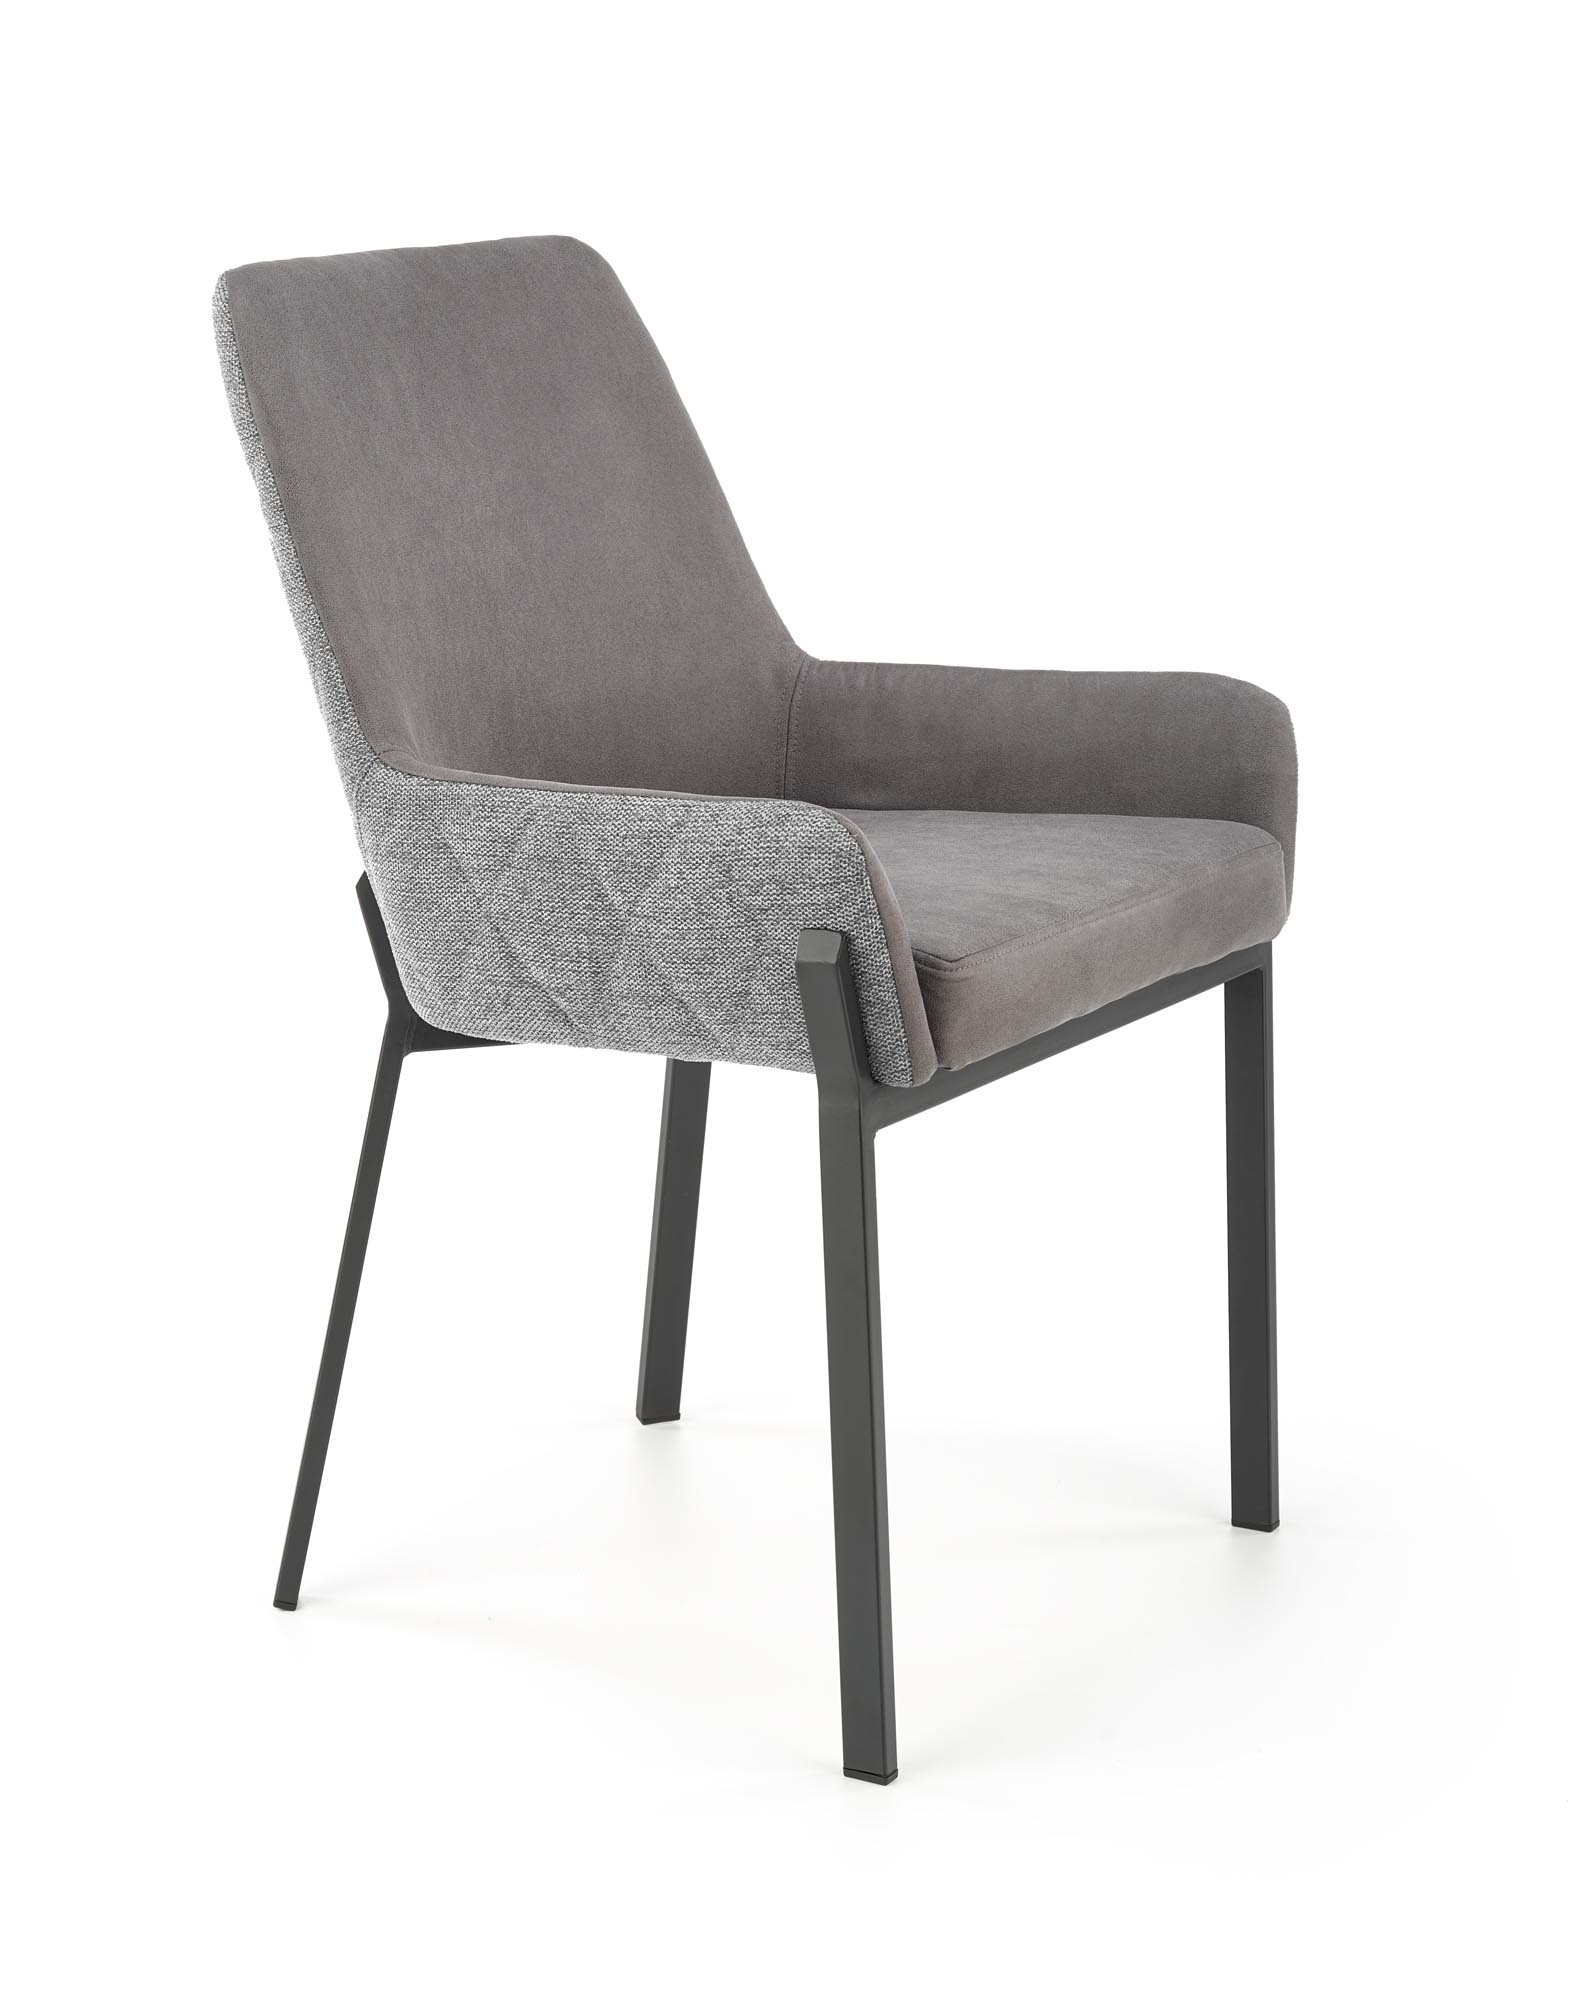 K439 stolica, boja: tamno siva / siva